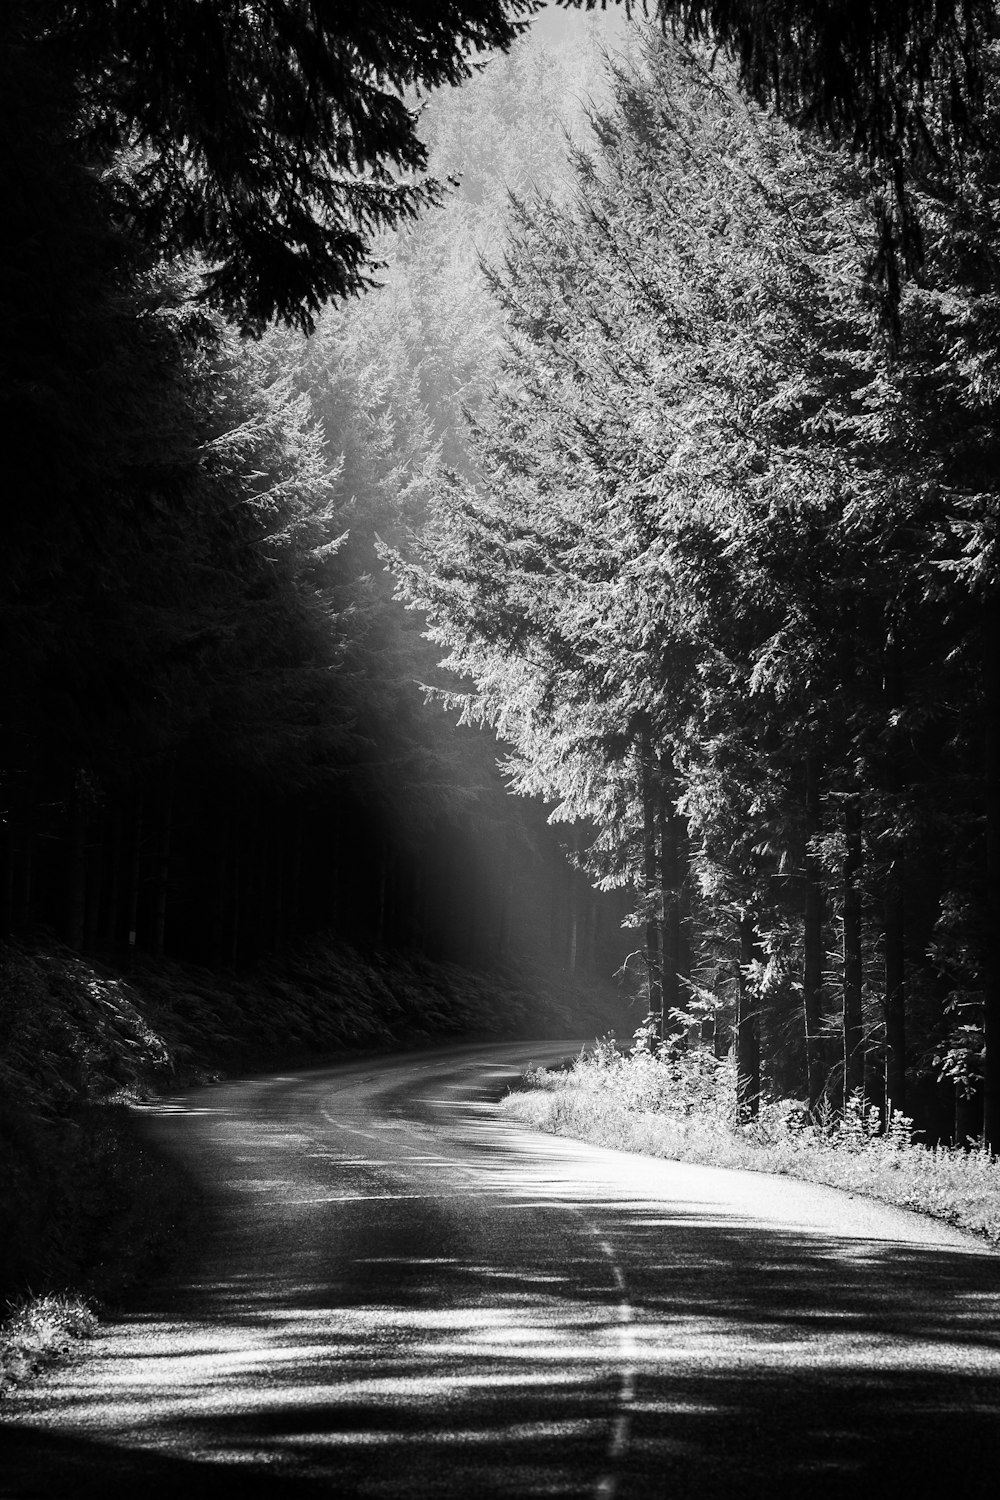 並木道の白黒写真